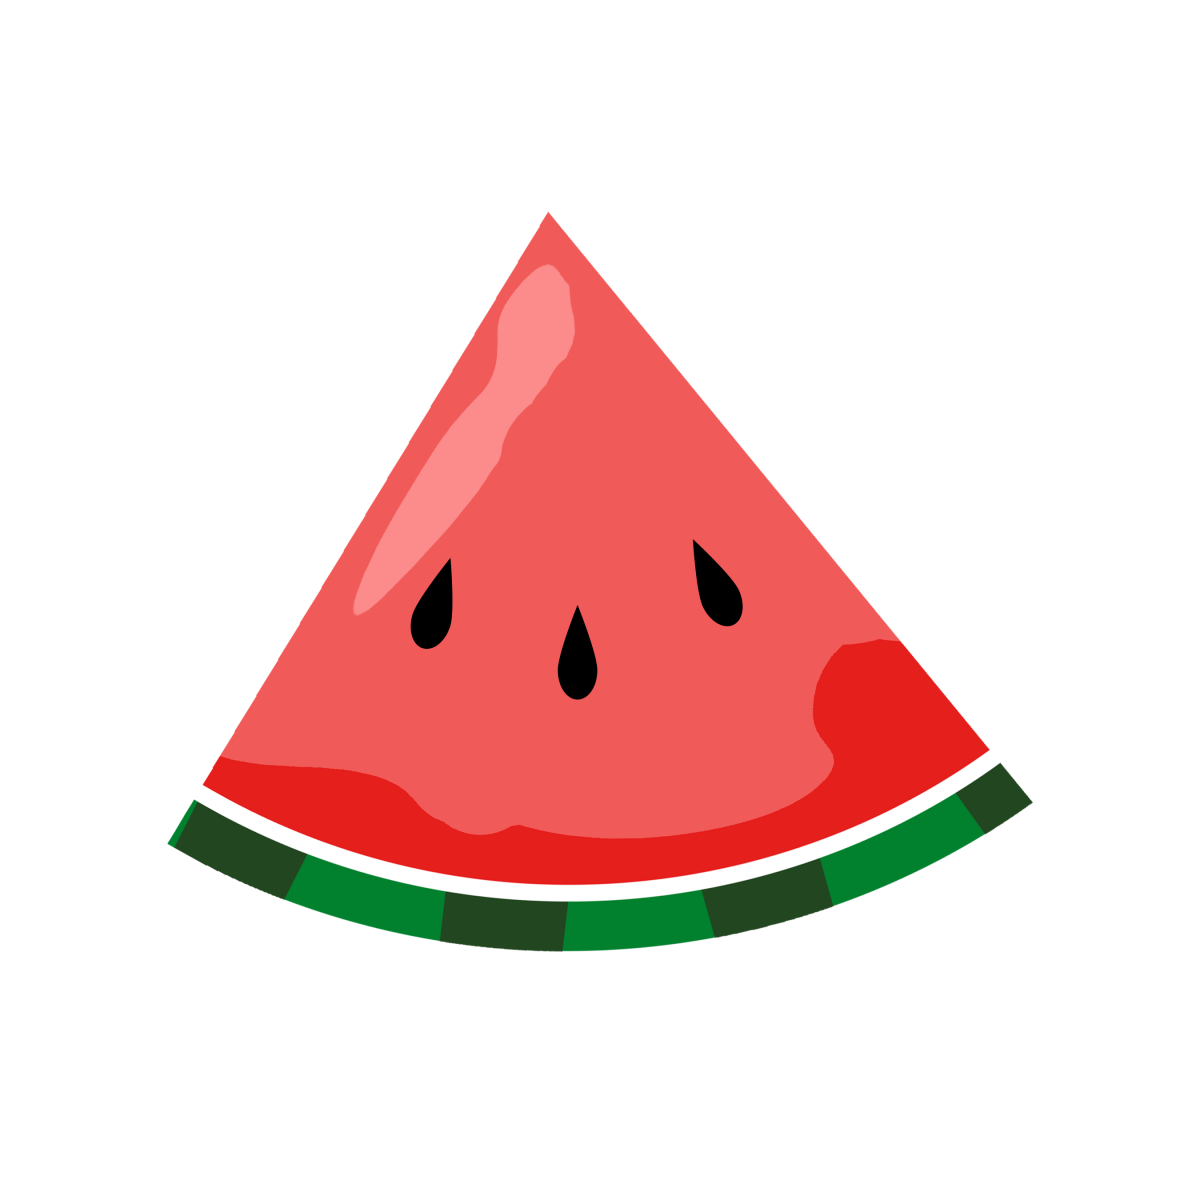 Watermelon Transparent Image Clipart